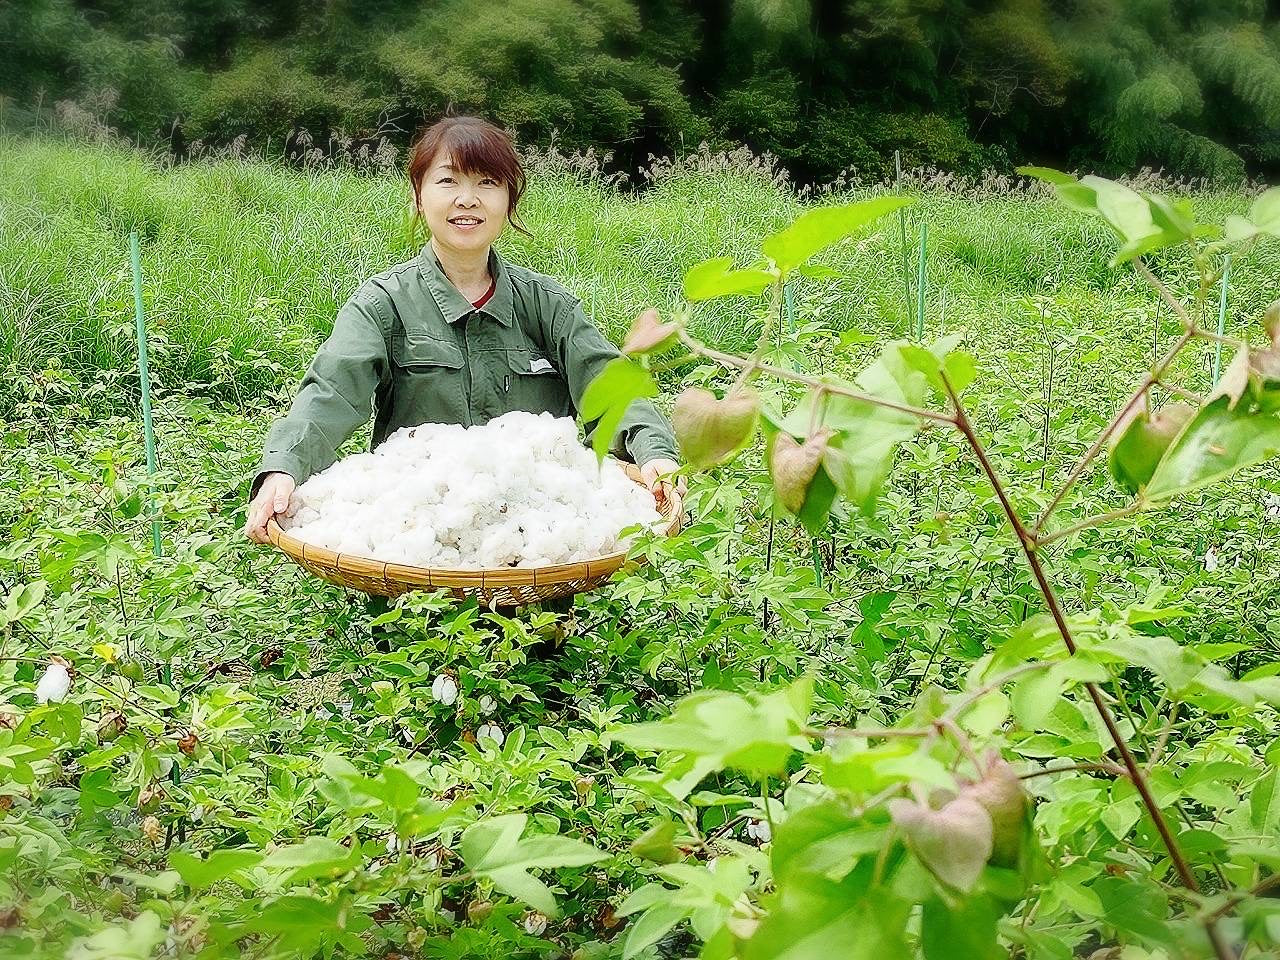 「わたからつむぐ」は、和綿（日本製オーガニックコットン100％）の生活雑貨・インテリア雑貨・コットンボール専門のオンラインショップです。オーガニックコットン(和綿)ふわふわとした触り心地、綿の優しい香り、それが和綿(日本製オーガニックコットン)の特徴であり人気の秘訣です。無農薬にこだわり、熊本県で豊かな自然の力だけ栽培している和綿なので、敏感肌やアトピーなど化学繊維が苦手な方々に安心安全です。和綿・オーガニックコットン100のシャツ・ストール・手ぬぐい・ハンカチ・肌着・靴下・タオル・ブランケット・ソックス・腹巻き・寝具・レッグウォーマー・レディース用パジャマ・レギンス・ラグ・マット・枕カバー・ルームシューズ等の生活雑貨、布ナプキン・おりものシート等の生理用品、赤ちゃん用のおむつ・おくるみ・スタイ・ロンパース等のベビー用品等のネット通販サイト。オーガニックコットン100の生活雑貨は、贈り物やギフトにもおすすめです。